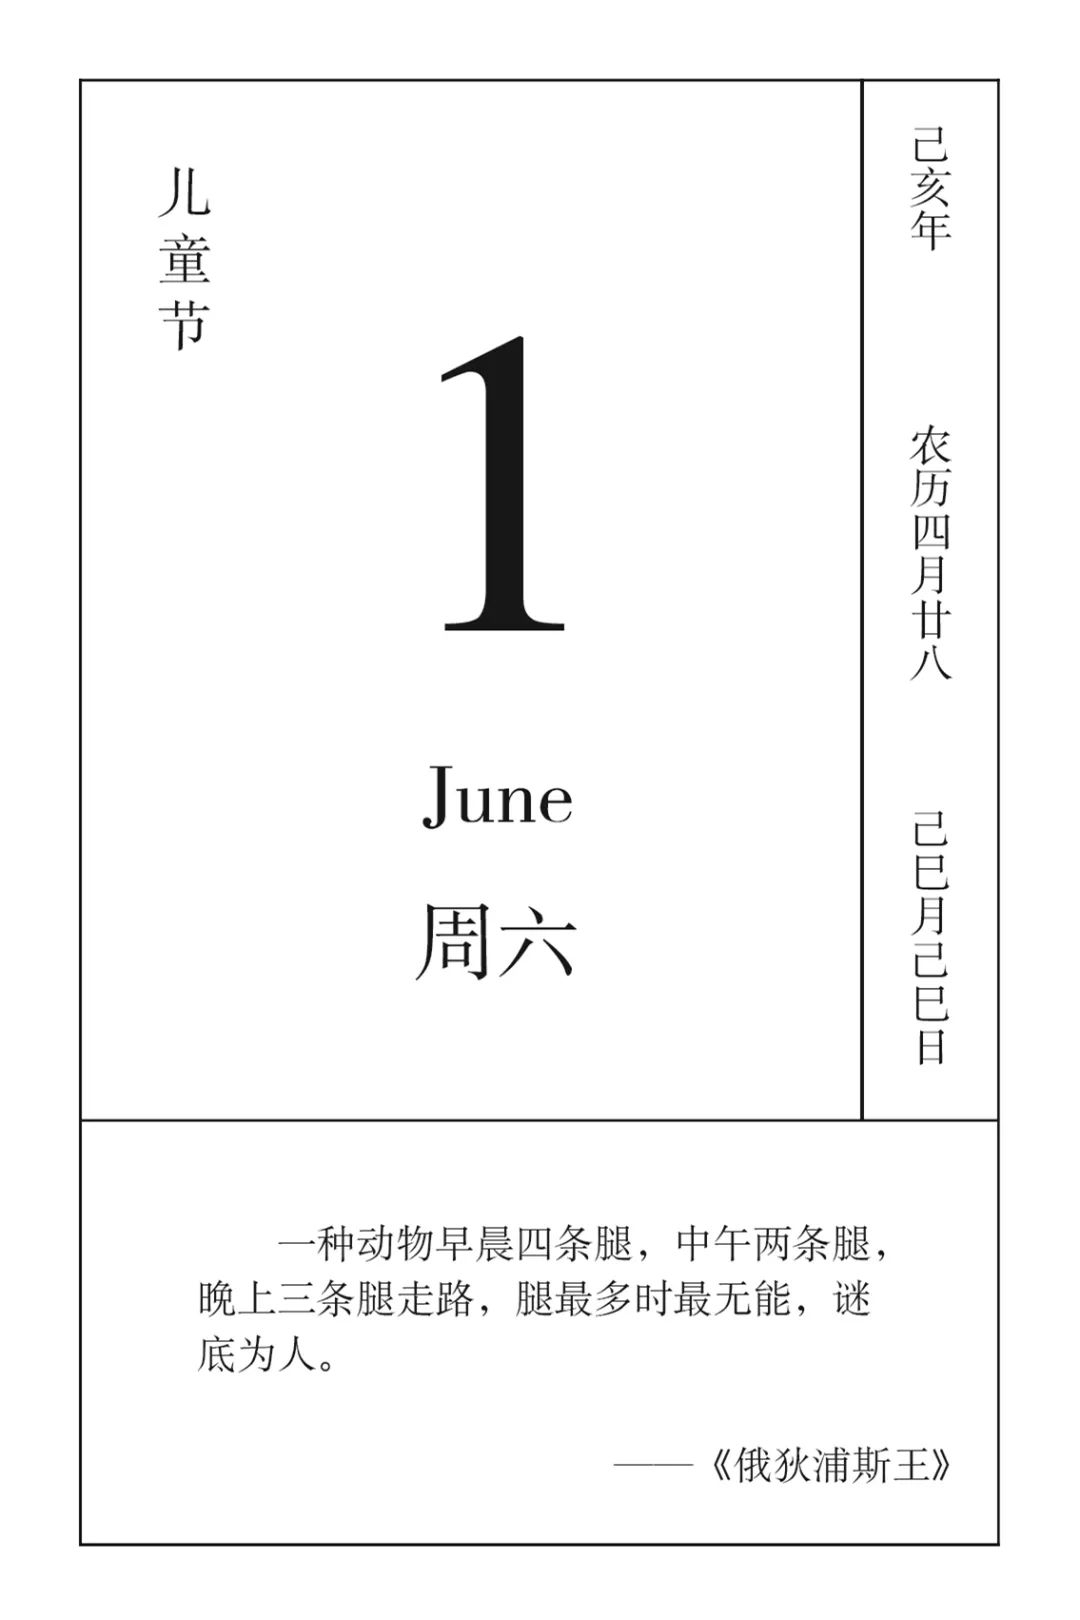 戏剧日历丨6月1日,快乐的节日